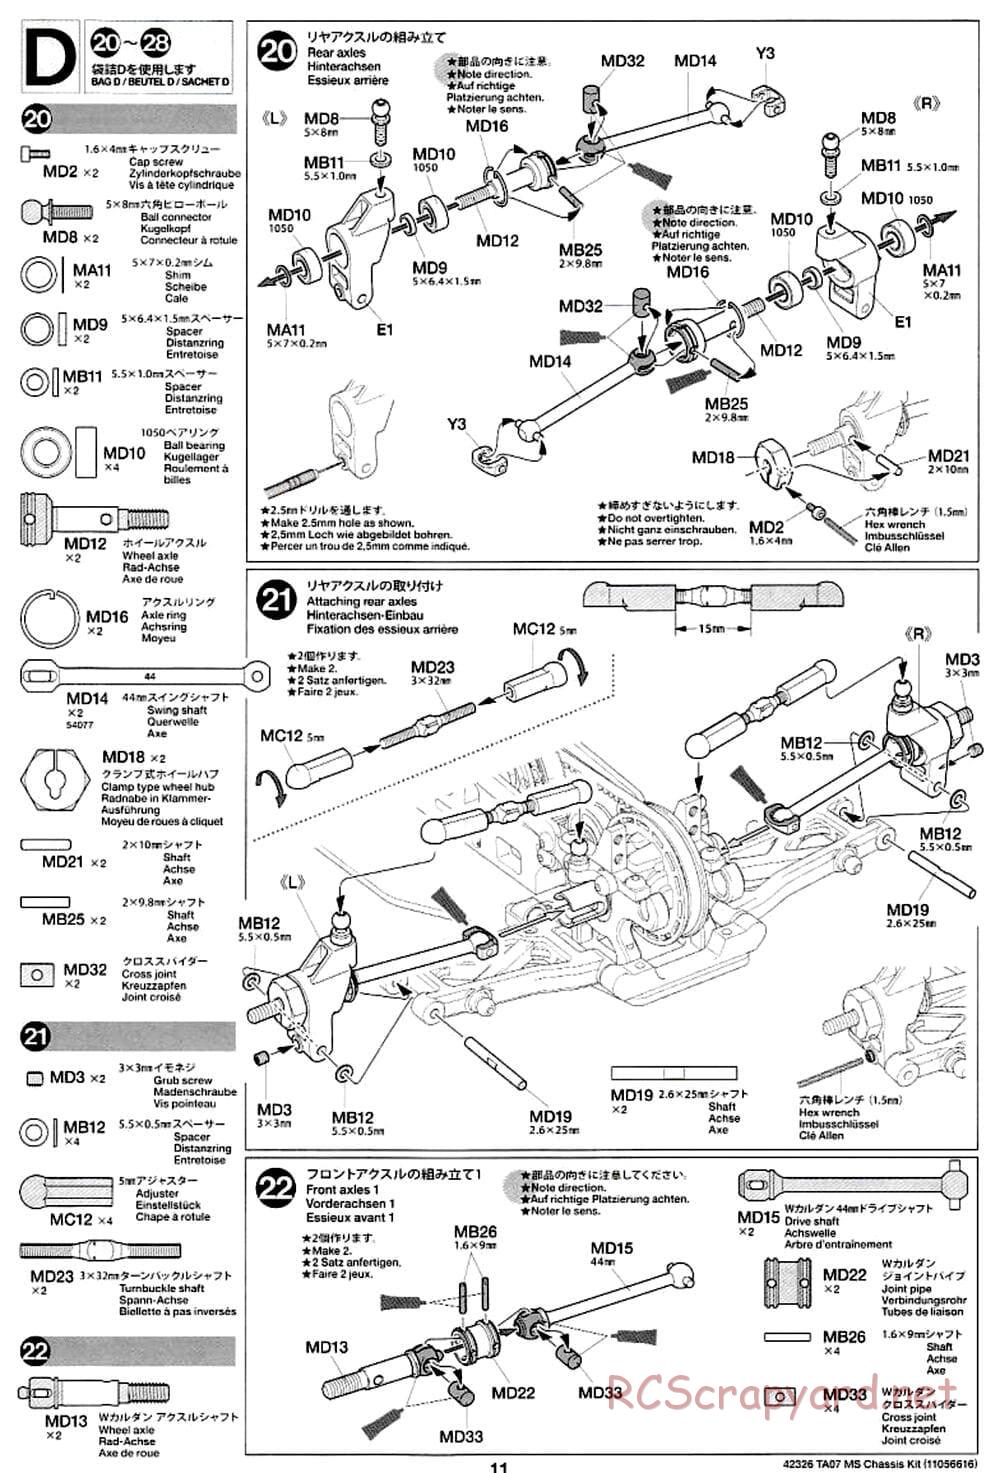 Tamiya - TA07 MS Chassis - Manual - Page 11